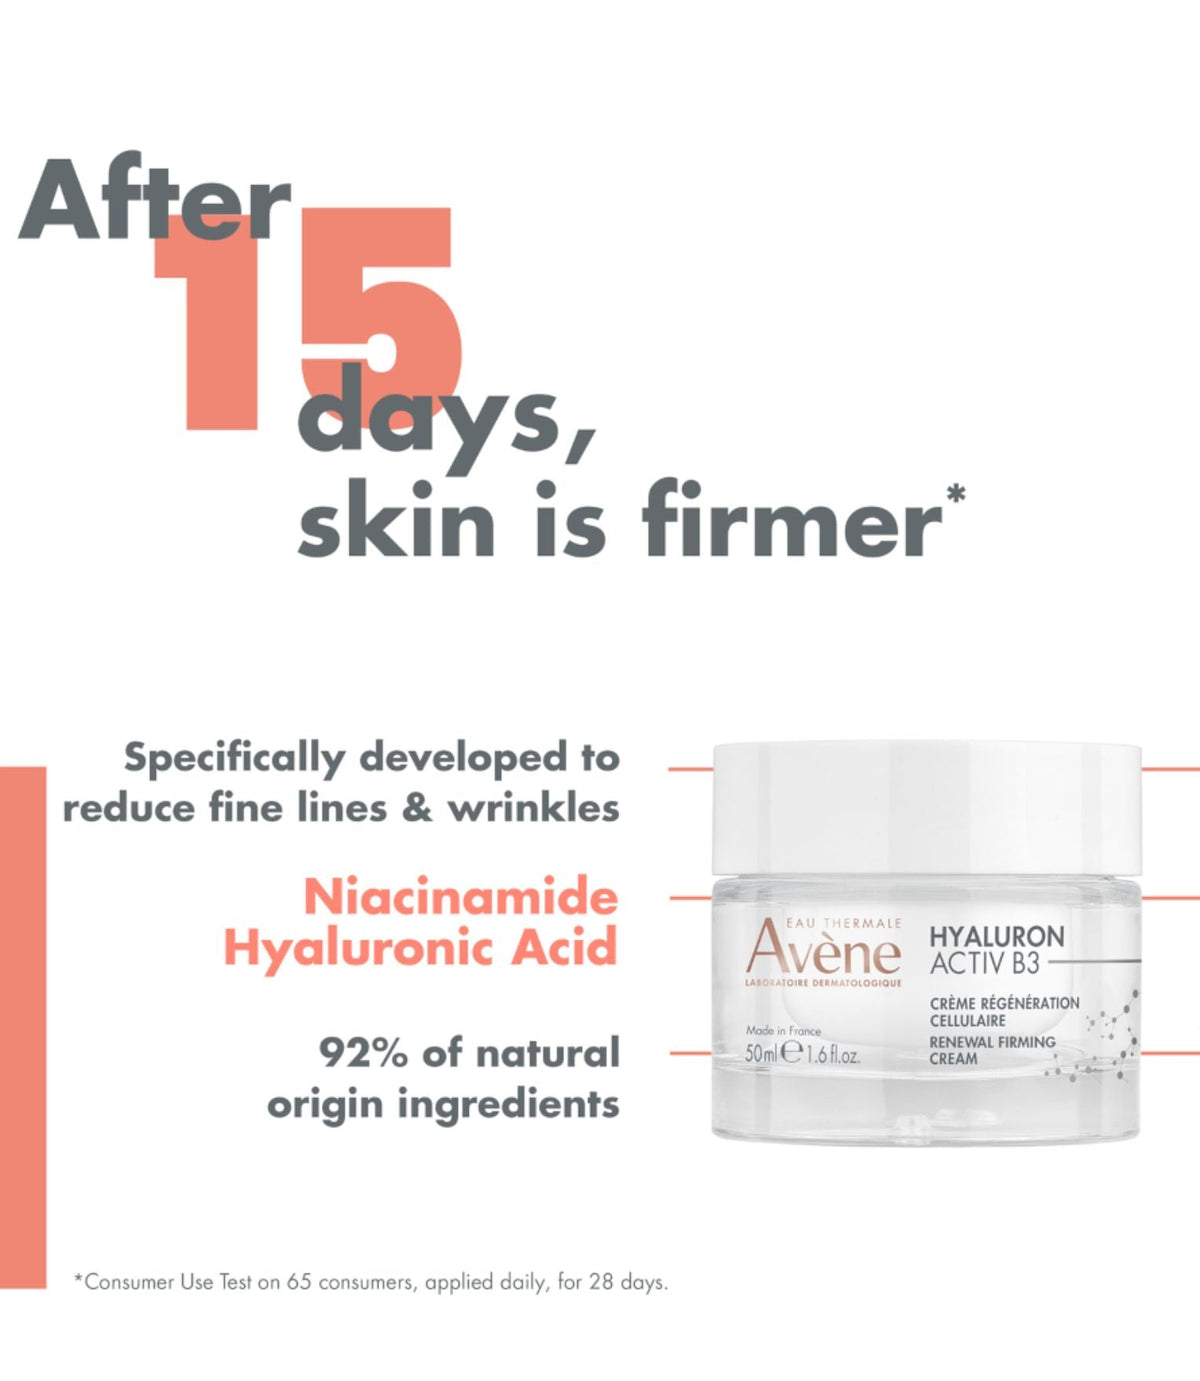 Hyaluron Activ B3 Renewal Firming Cream 50ml